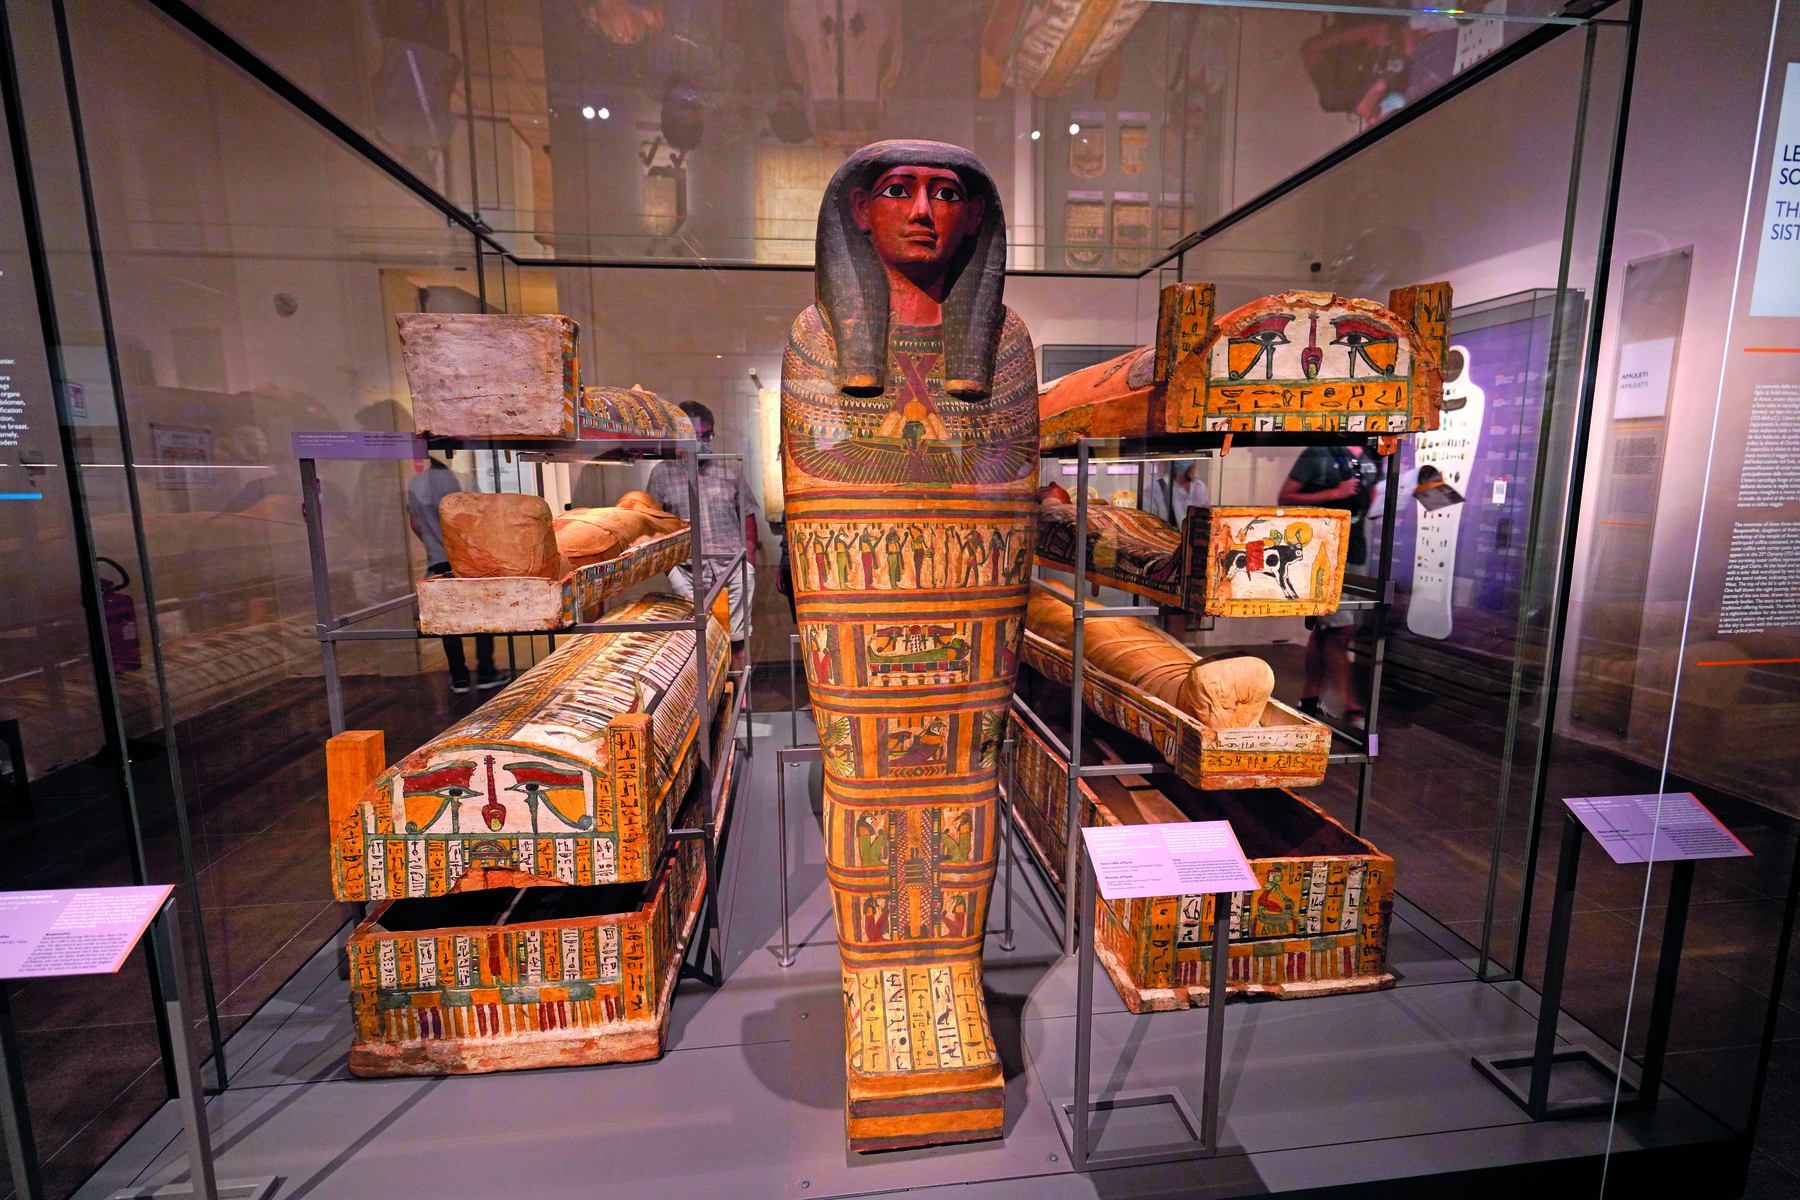 Fotografia. Exposição de vários sarcófagos egípcios em posição horizontal, com destaque para um, ao centro, em posição vertical, apresentando a escultura de um rosto humano no topo, com longos cabelos escuros, e ilustrações por toda a superfície.